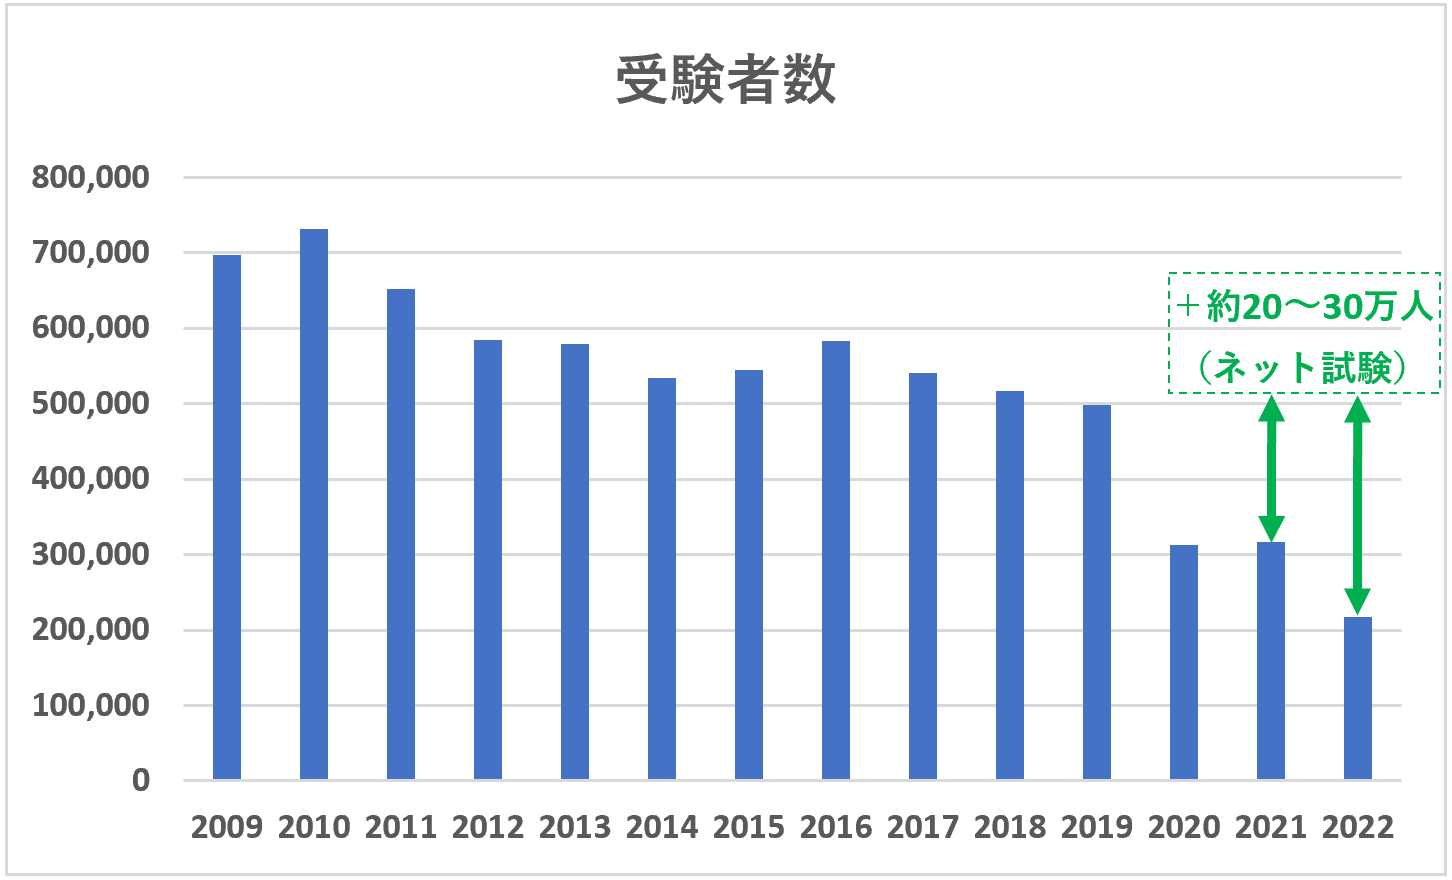 日商簿記検定受験者数推移（統一試験＋ネット試験）2009年～2022年